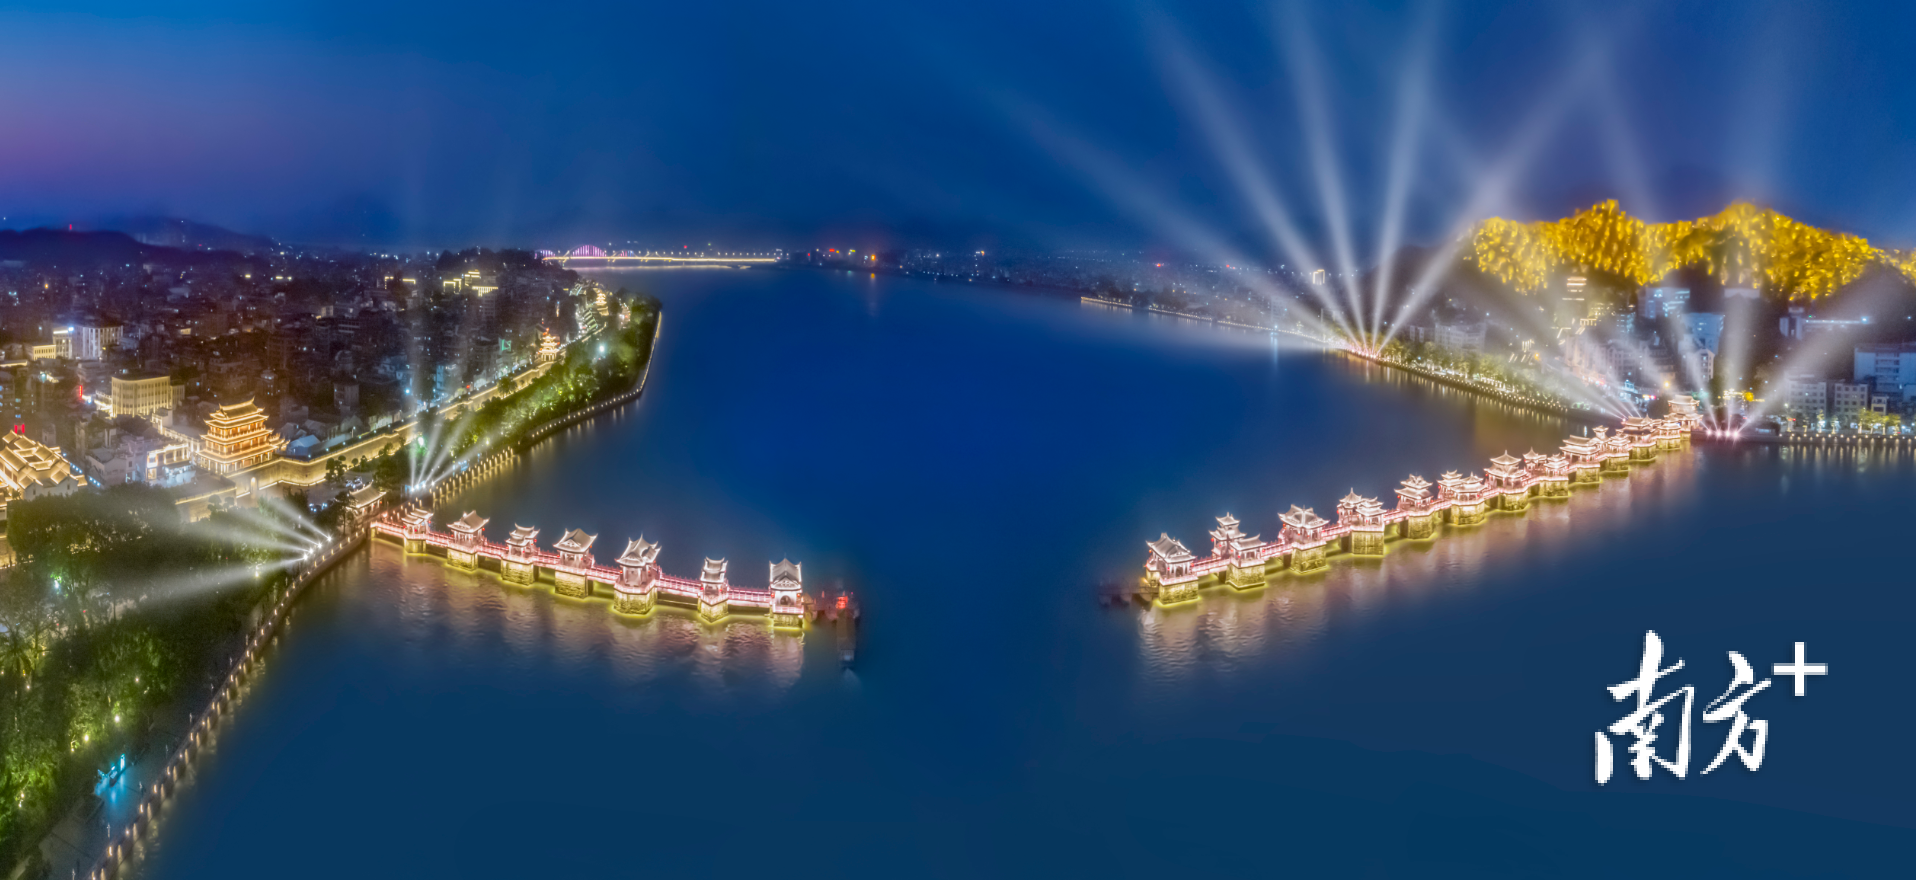 广济桥上，“凤城之光”灯光秀为文物保护利用带来新活力。林文强 摄